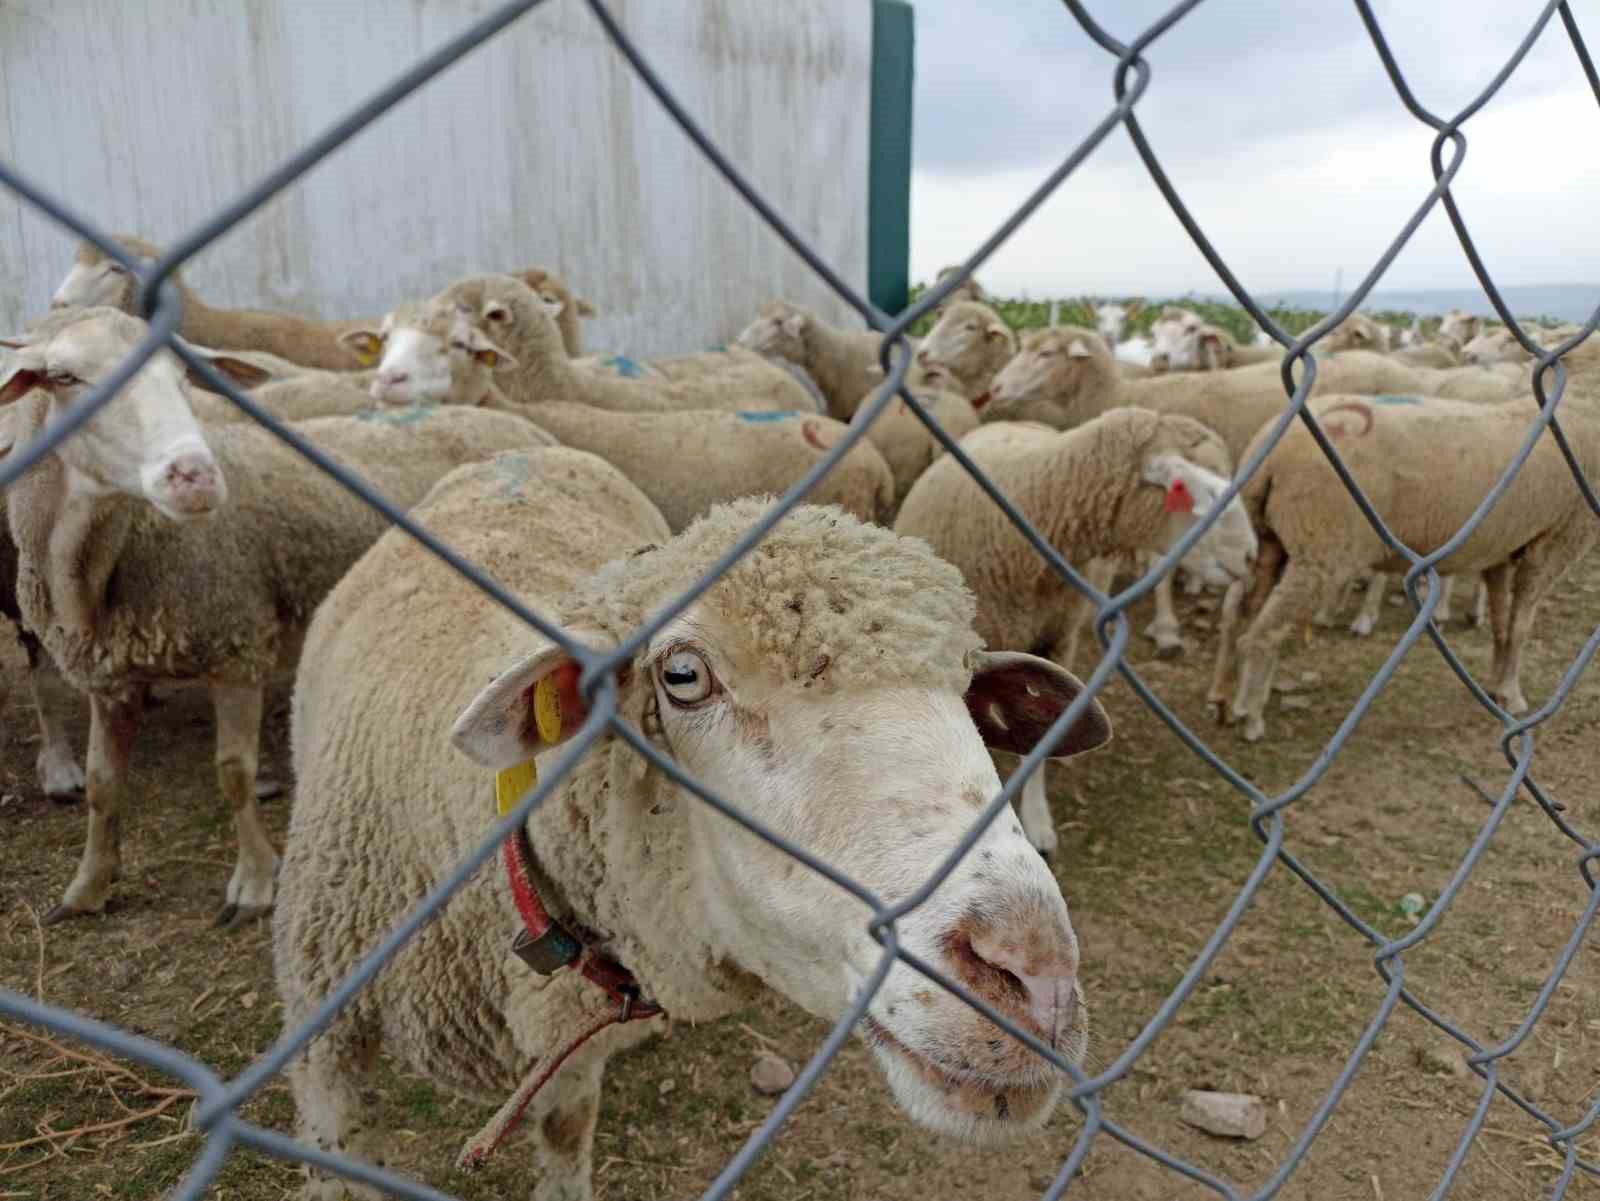 Hayvan pazarlarının kapalı olması üreticiyi düşündürüyor